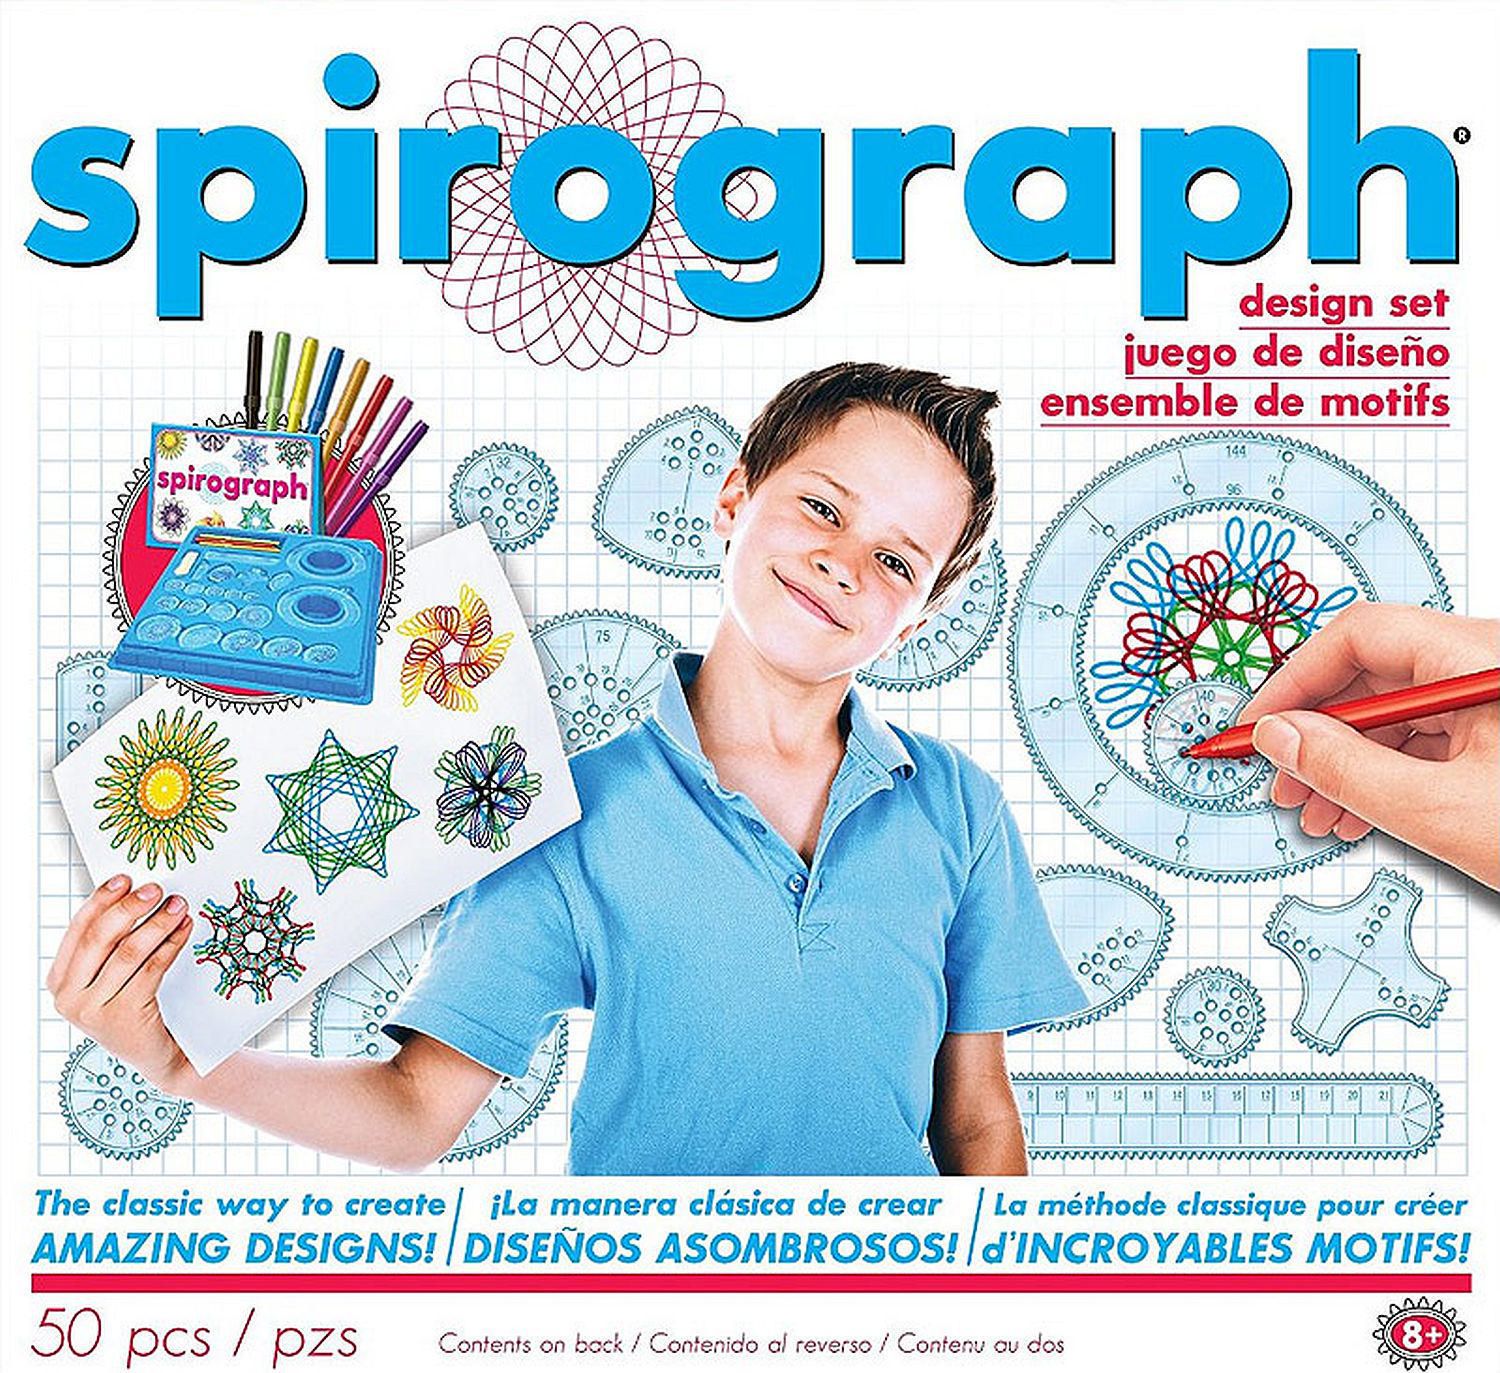 spirograph kit price